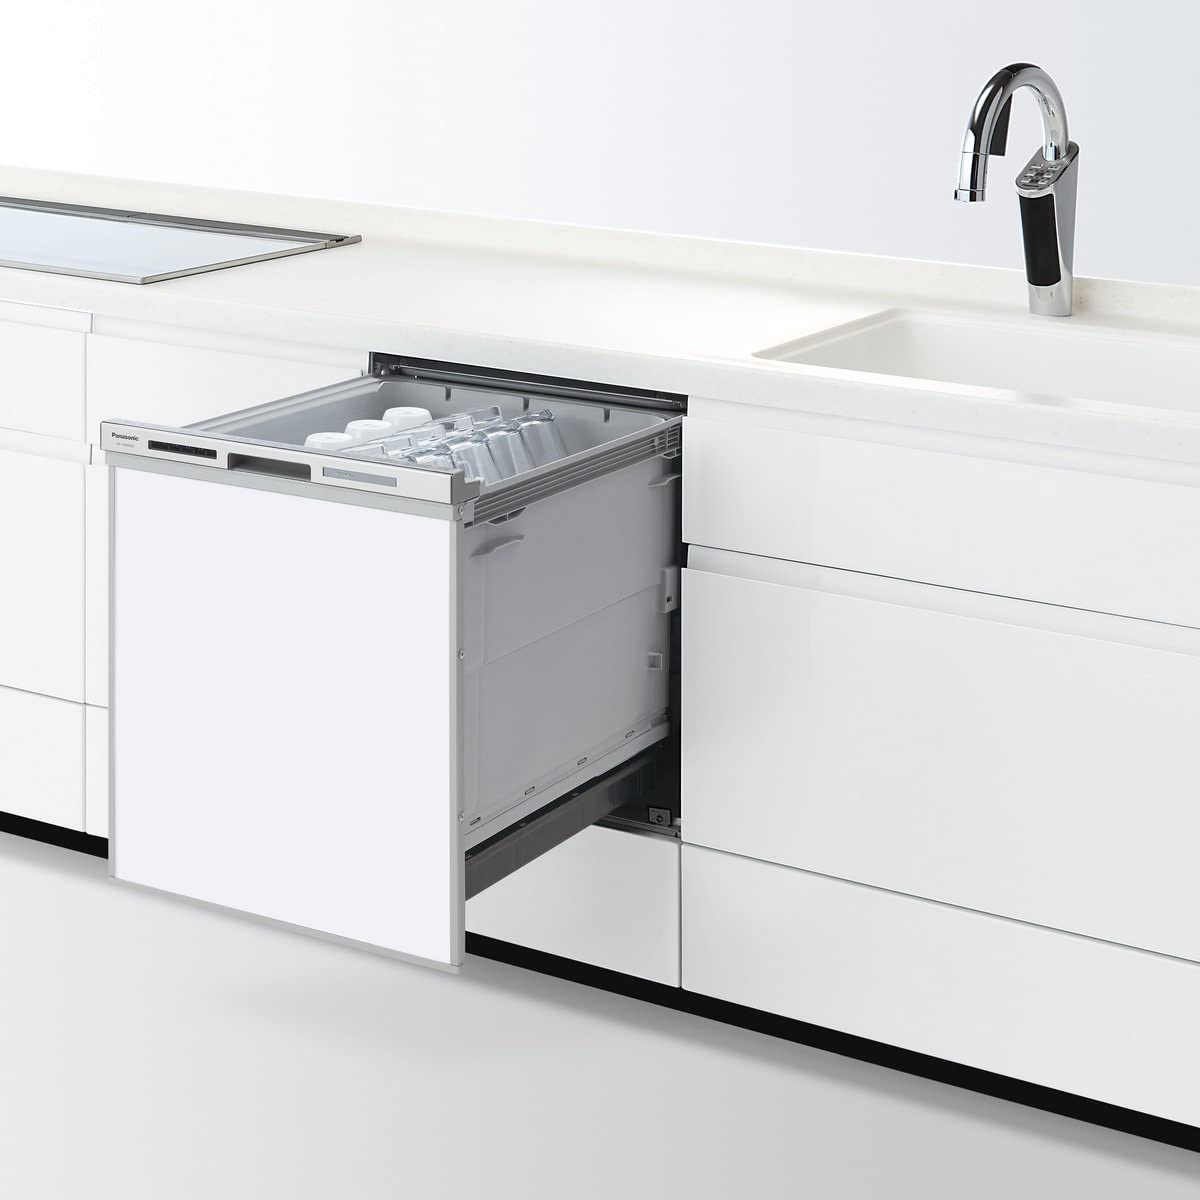 Panasonic(パナソニック) ビルトイン食器洗い乾燥機 NP-45MD8Sホワイトの商品画像1 